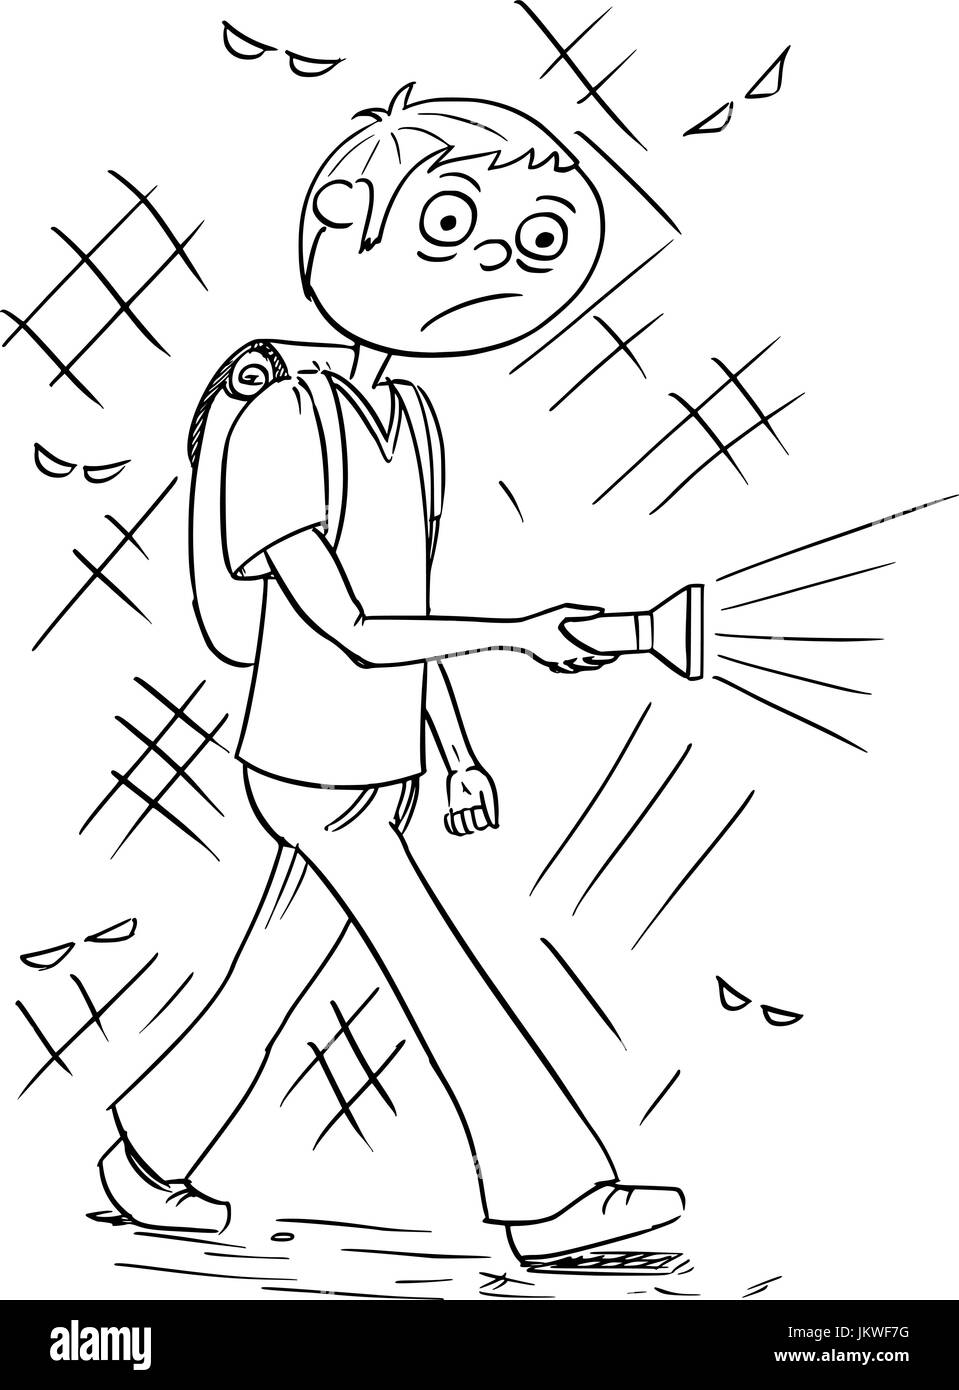 Dessin à la main cartoon vector illustration d'effrayant garçon ou jeune homme tenant une lampe torche marche à travers la nuit noire. Illustration de Vecteur